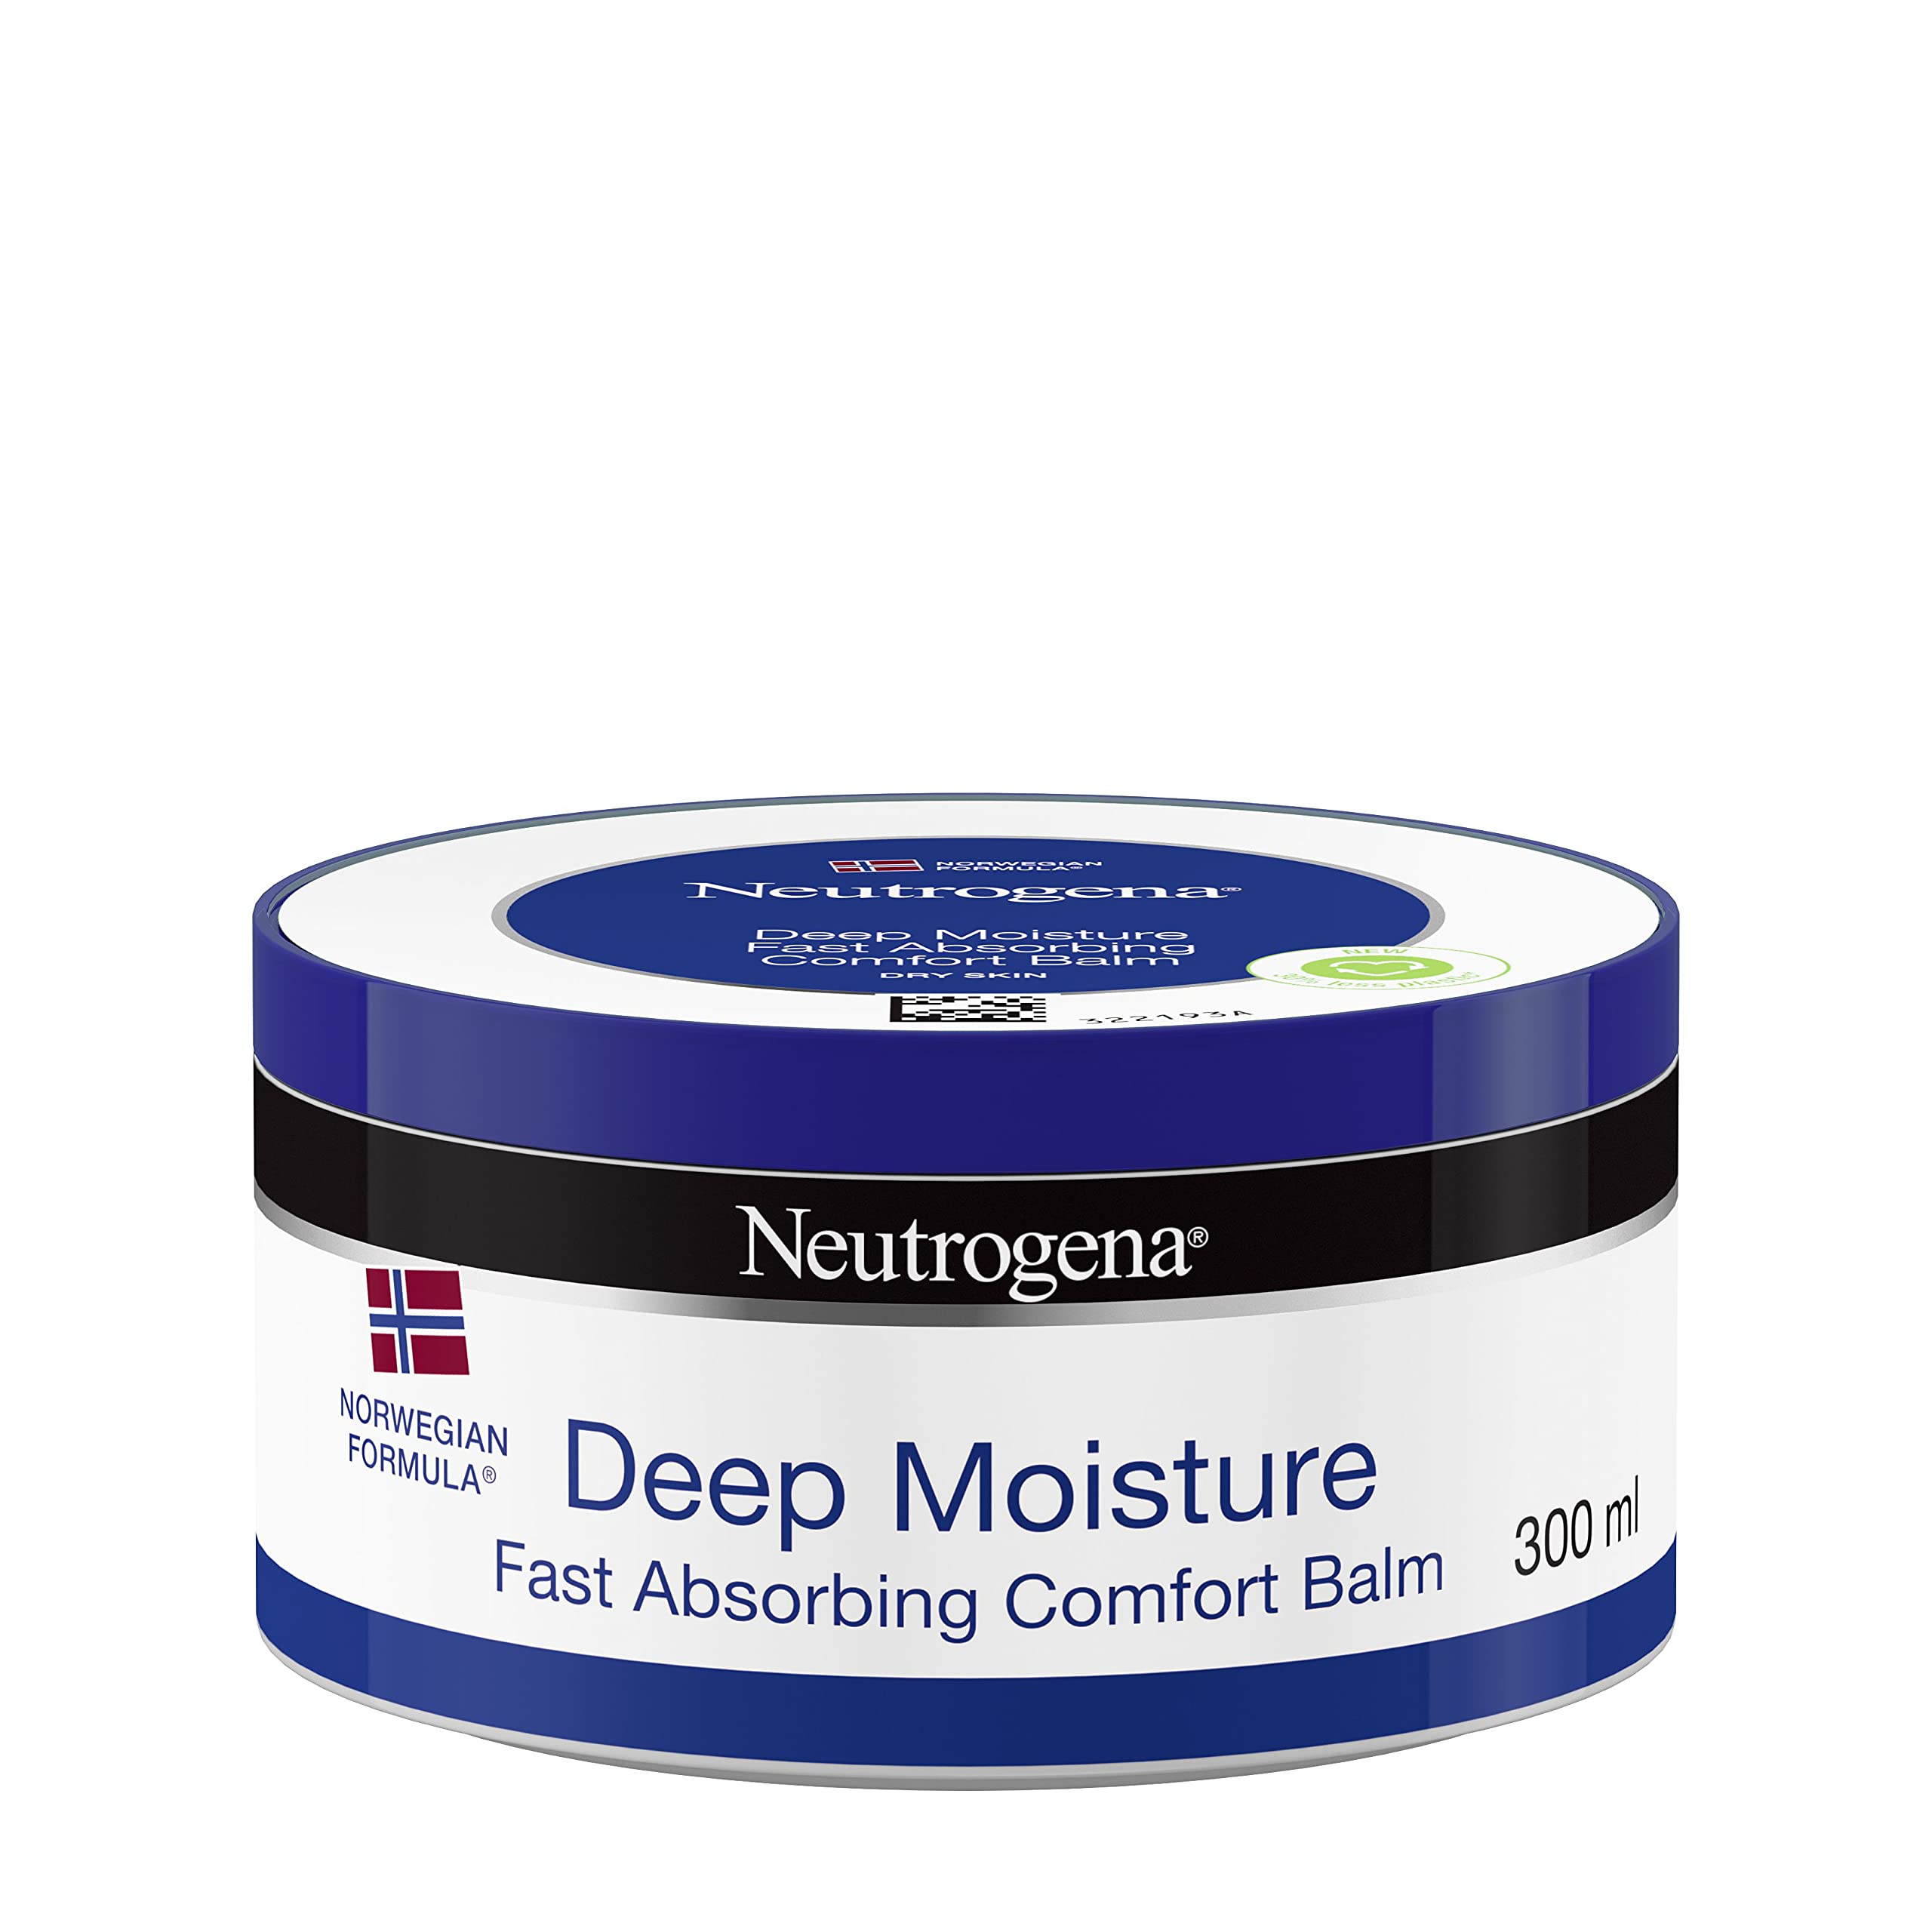 Neutrogena Deep Moisture Fast Absorbing Balm, 300ml